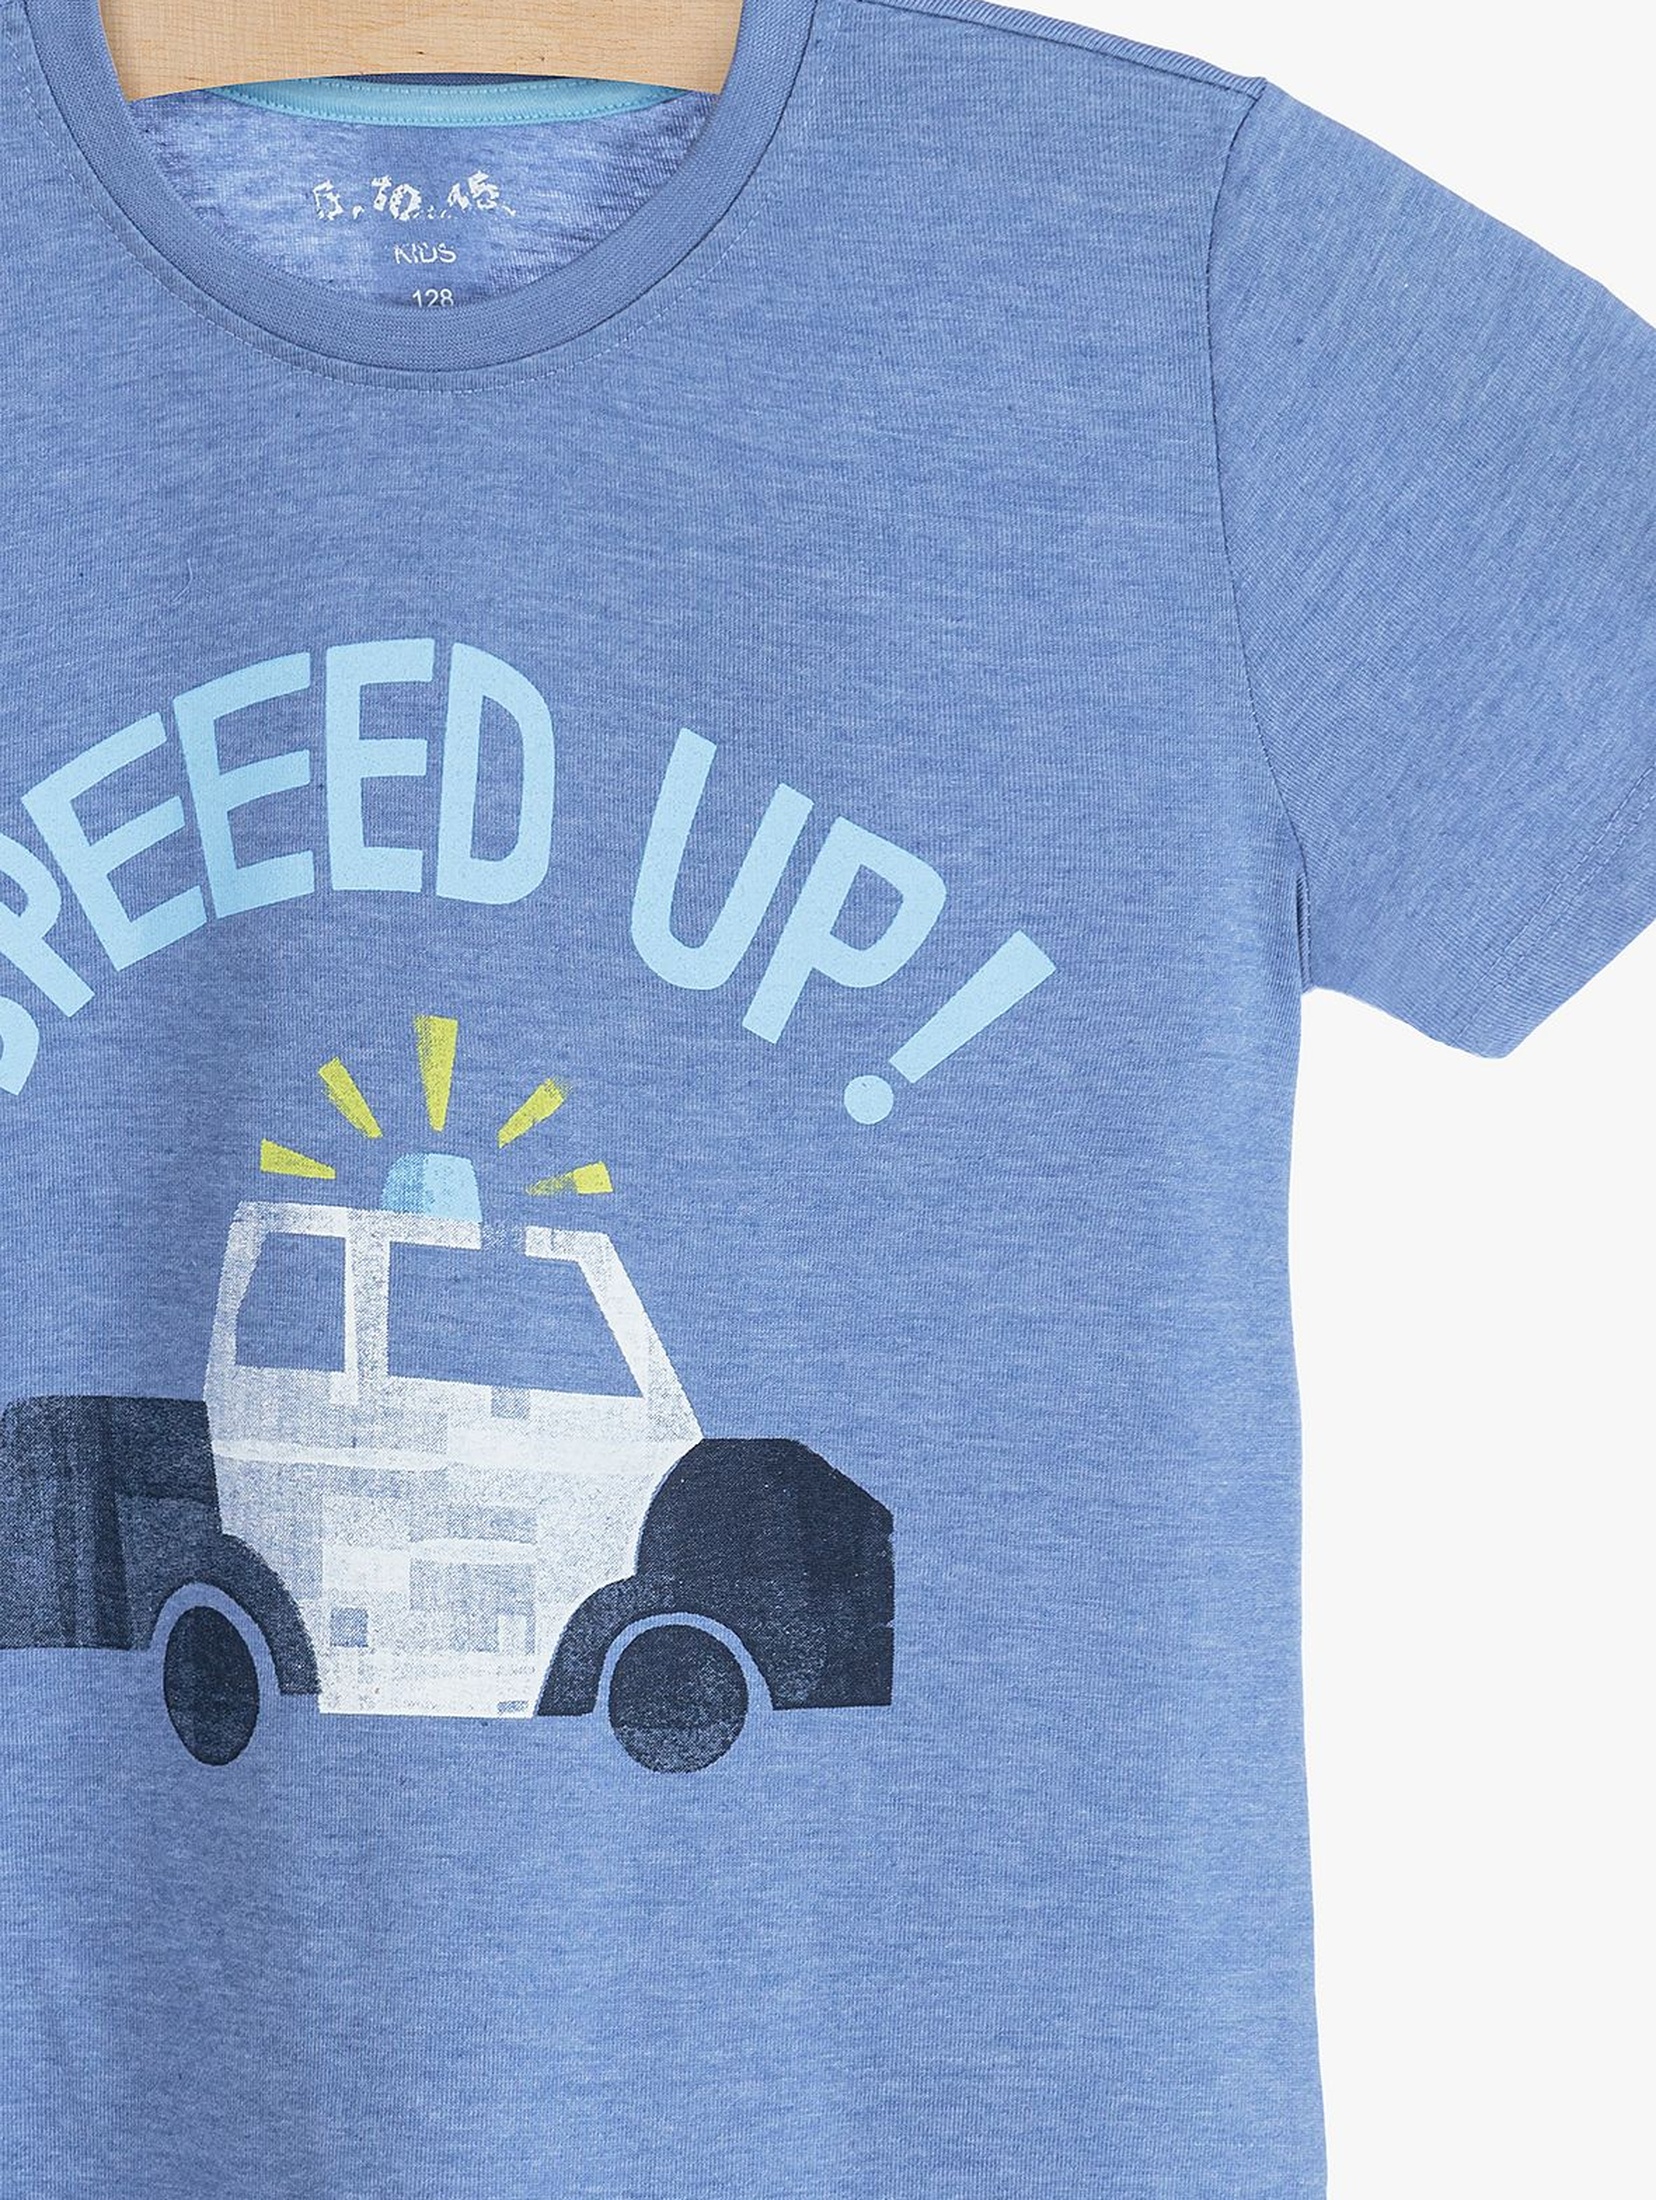 T-shirt niebieski dla chłopca- Speed Up